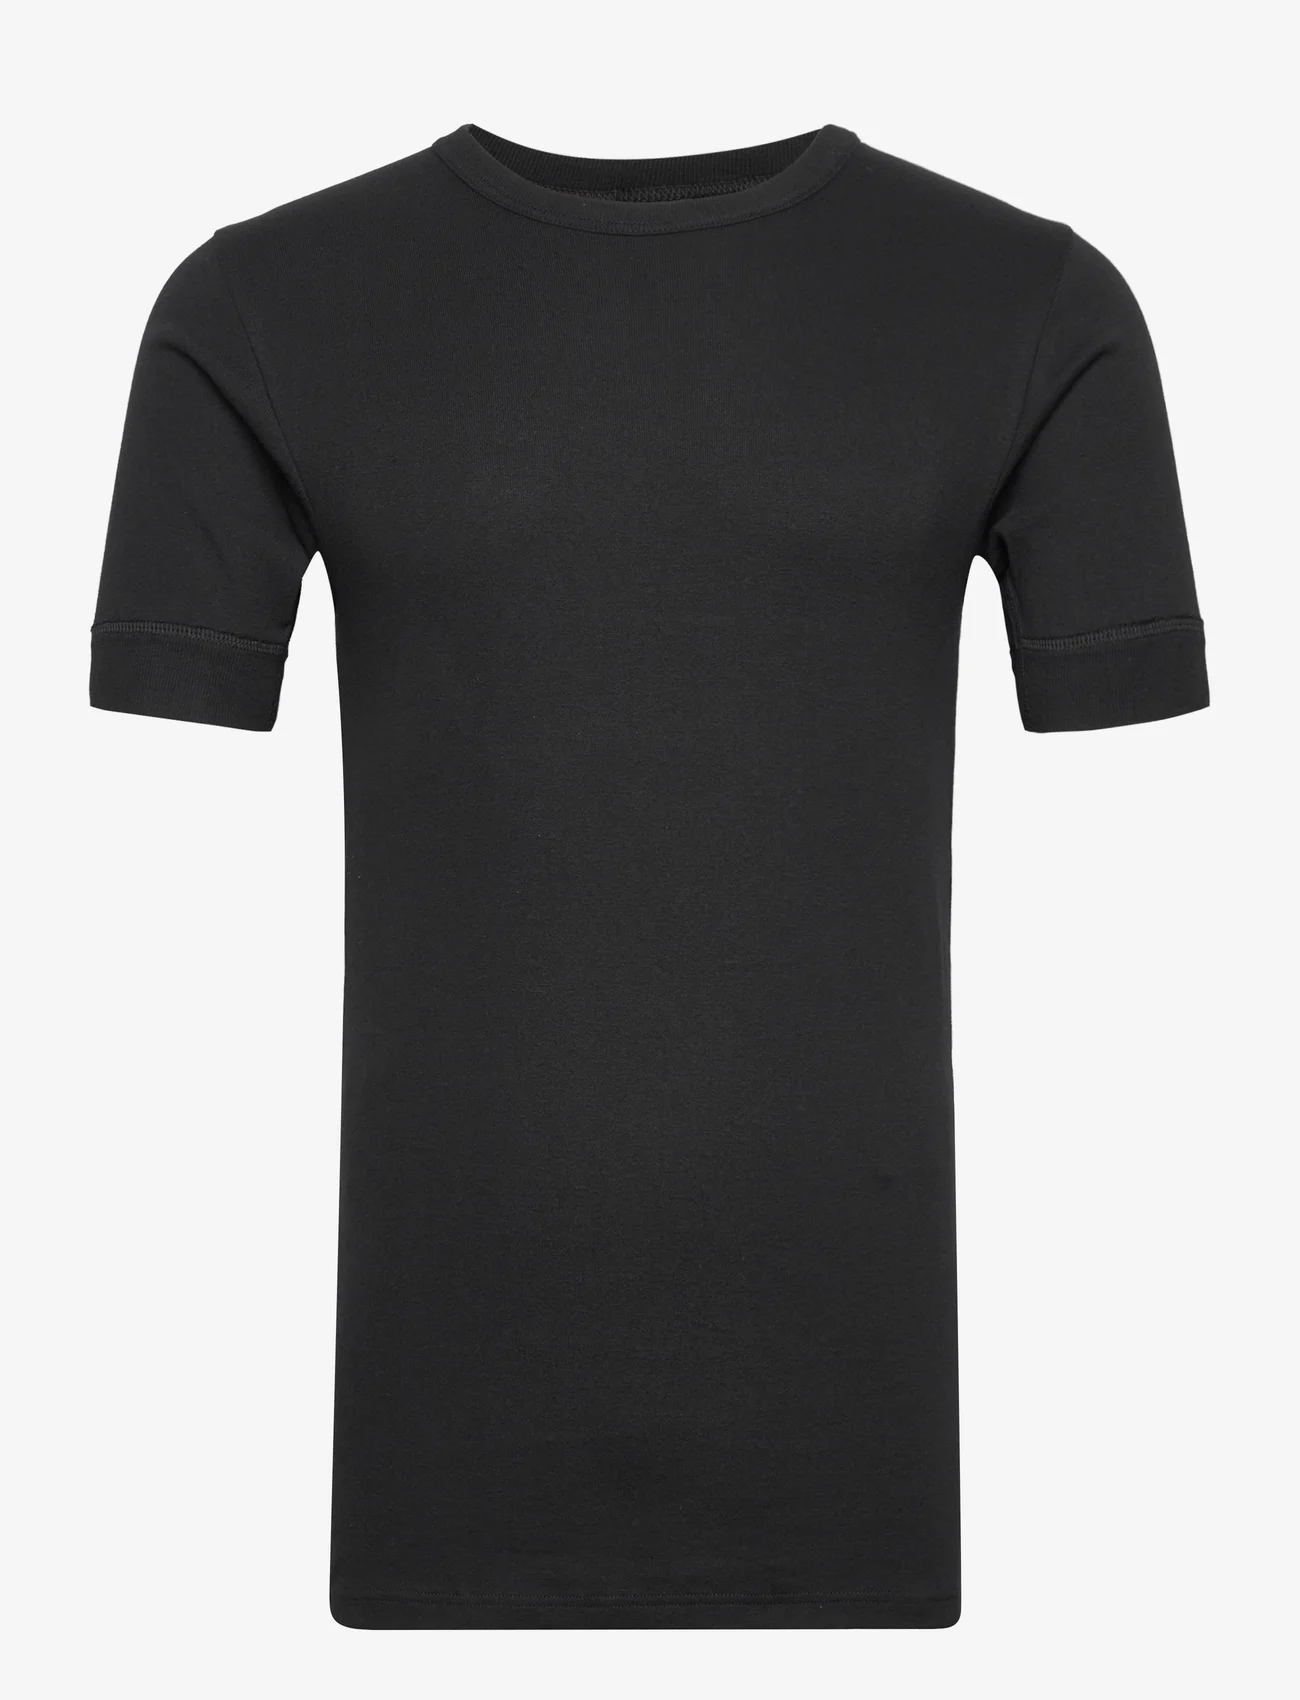 Dovre - Dovre T-shirts 1/4 ærme organi - mažiausios kainos - black - 0